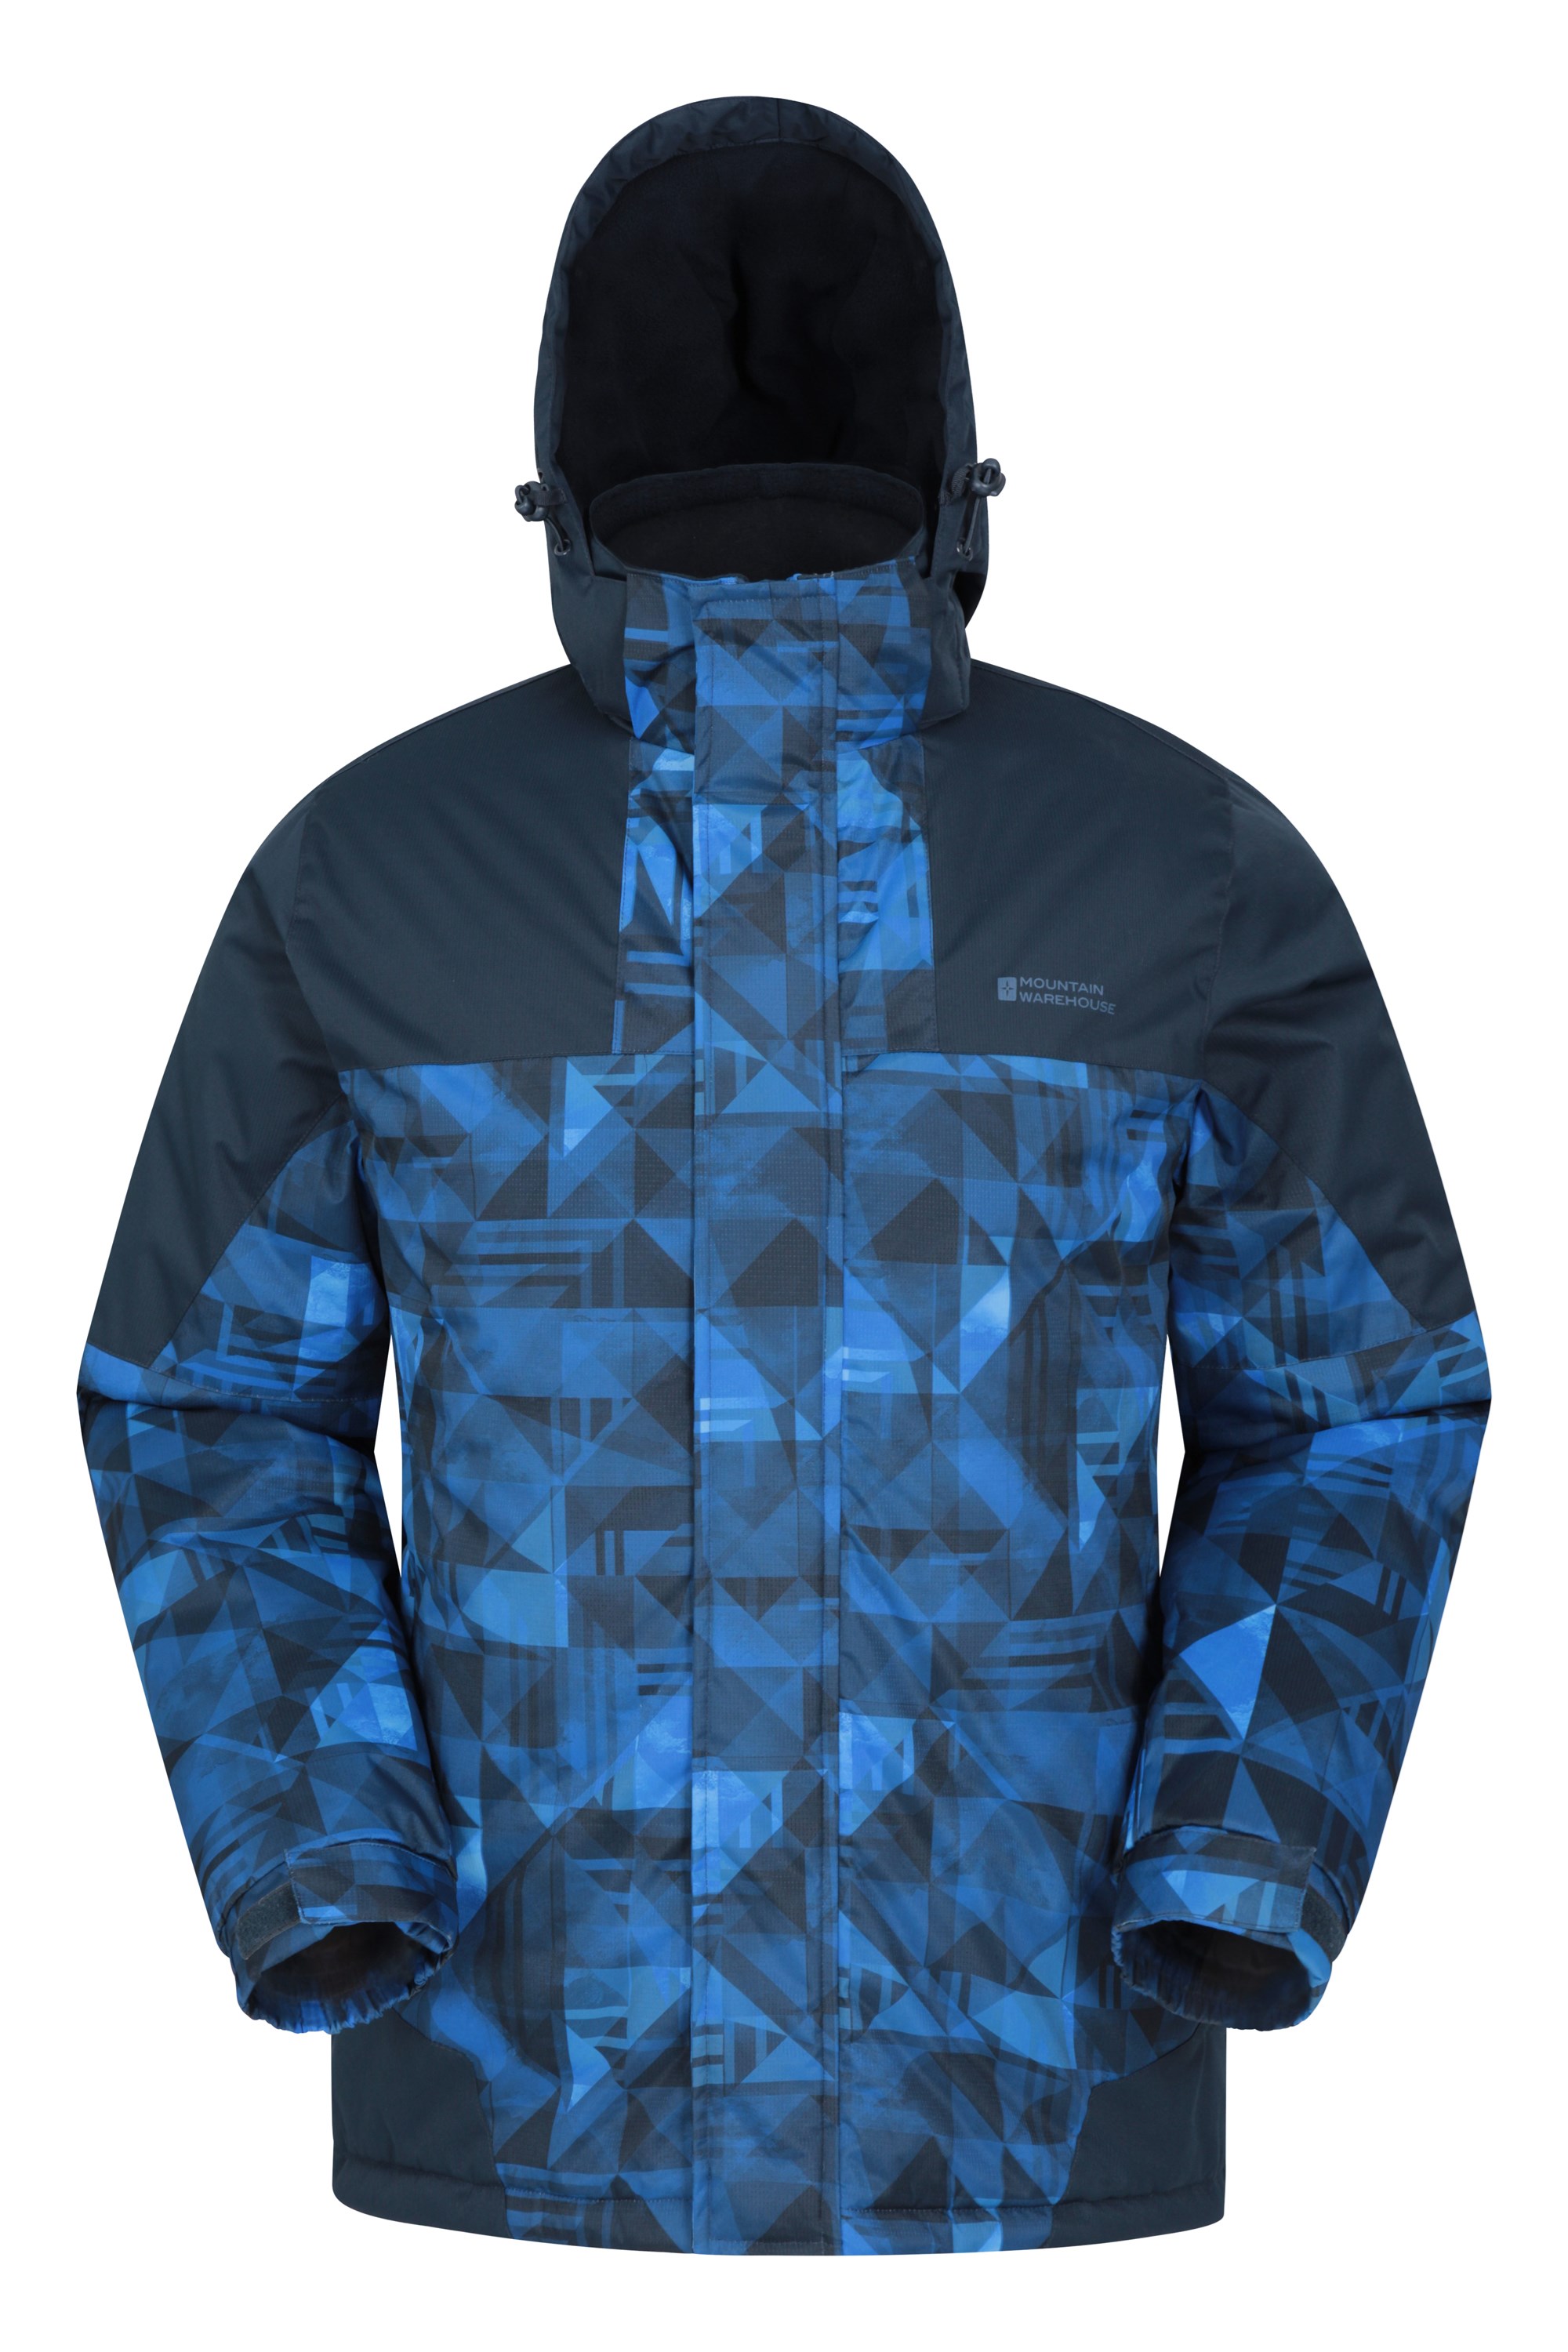 Mountain Warehouse Shadow Mens Printed Ski Jacket Warm Snow Jacket